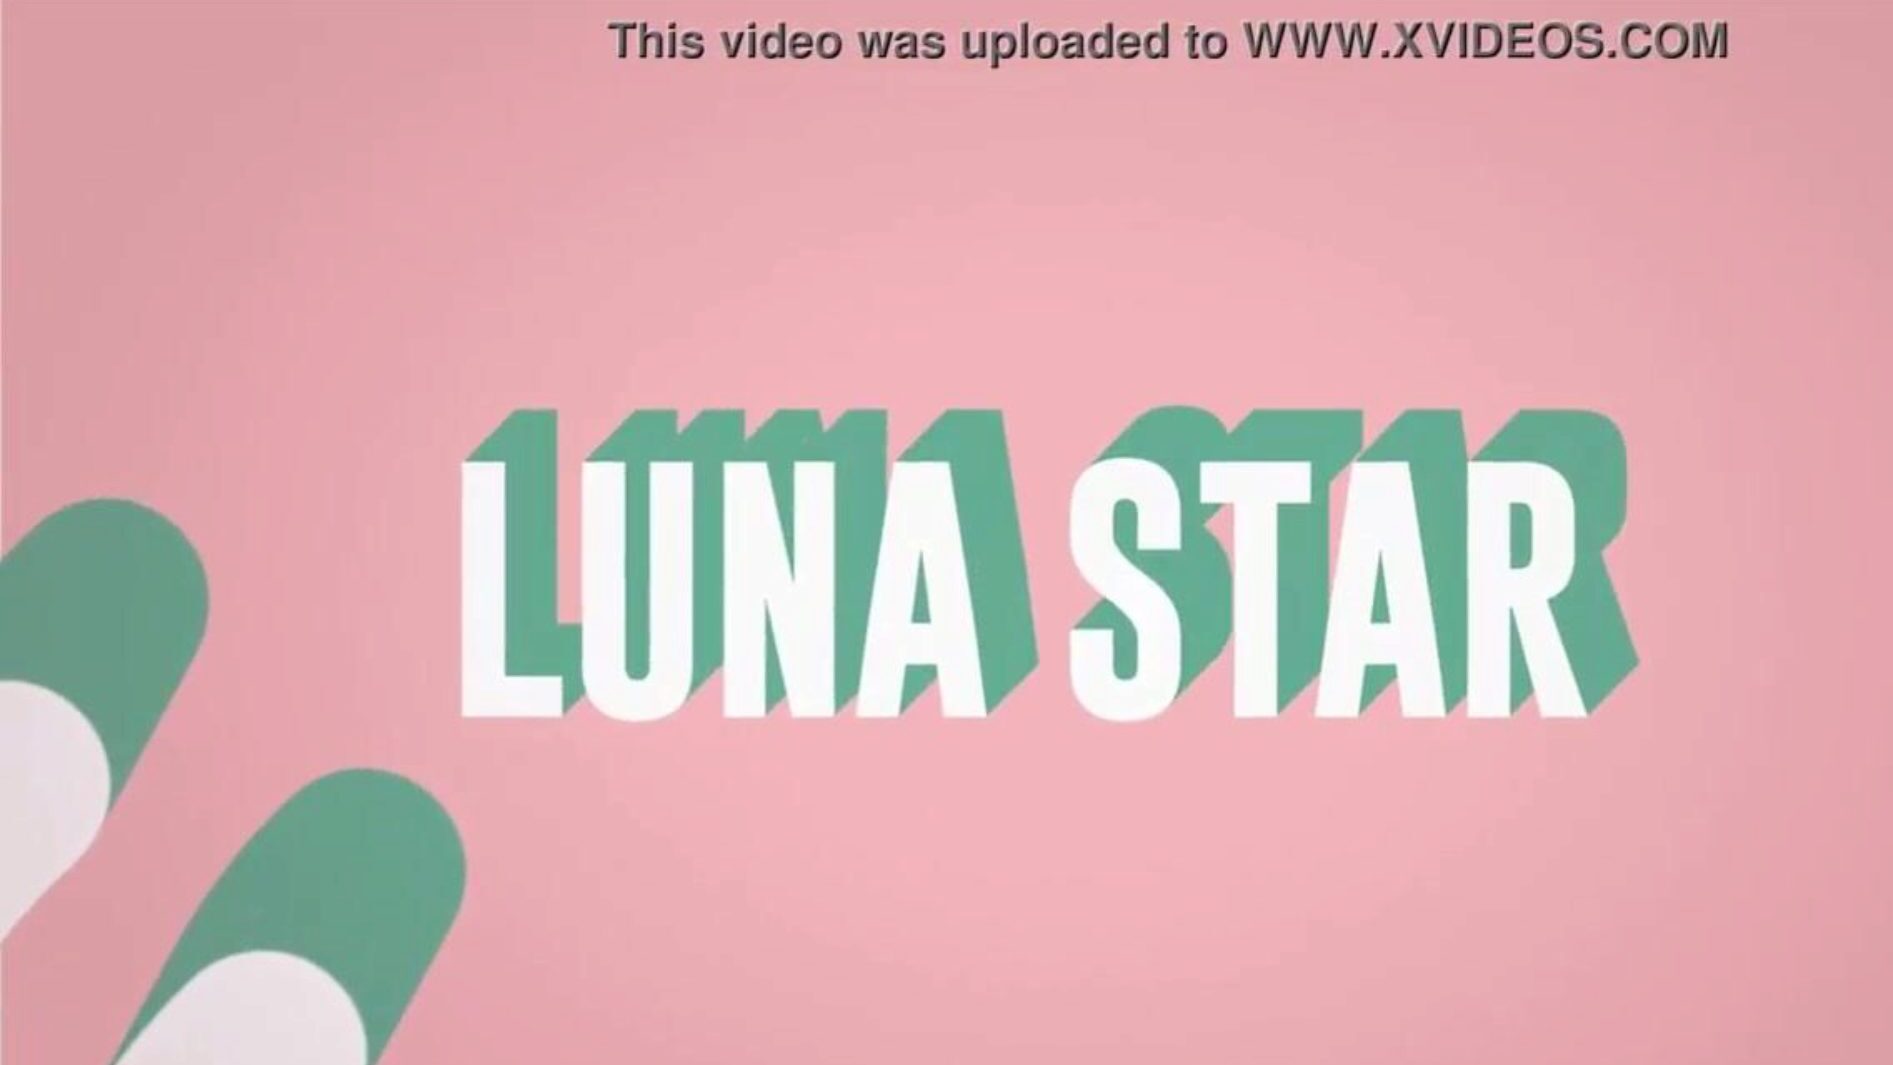 זה ה- WIFI המזוין שלי: הופעות ברייזר עם כוכב לונה; ראה מלא בכתובת www.zzfull.com/luna